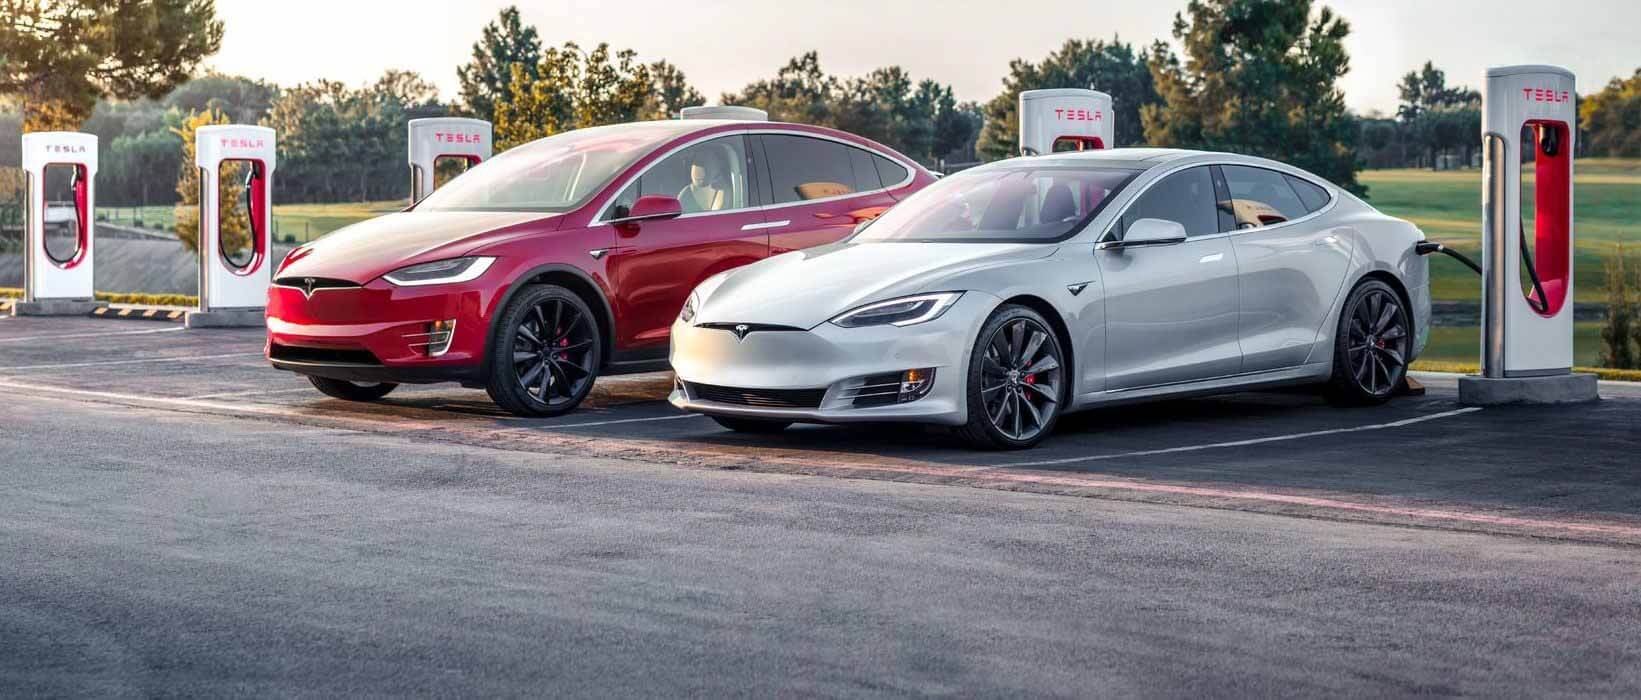 Tesla повышает пиковую скорость зарядки для нагнетателей Model S и Model X